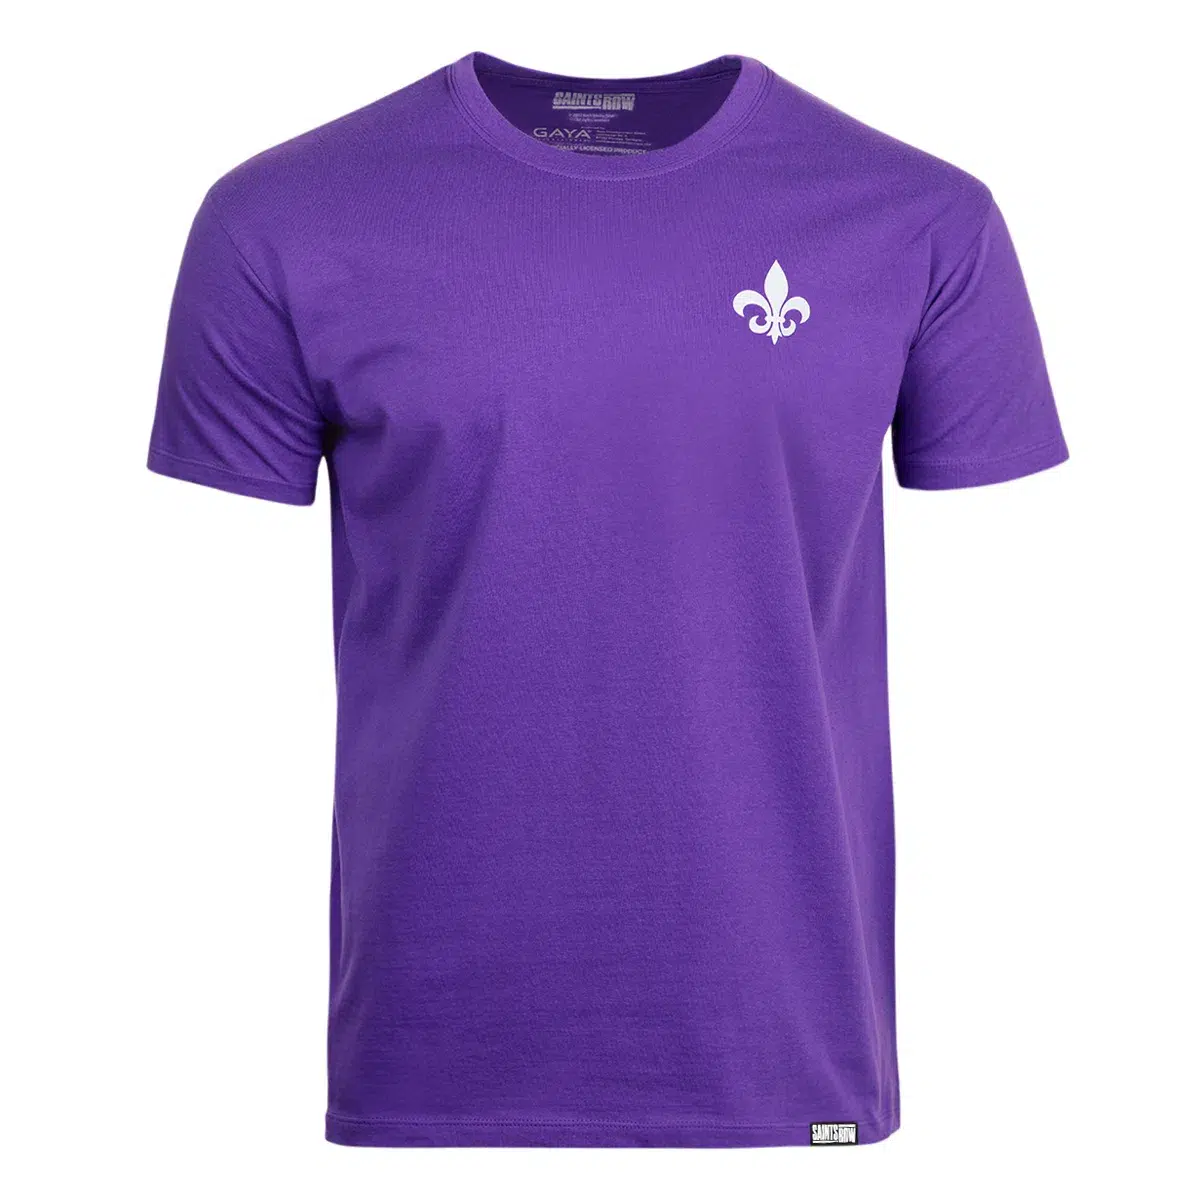 Saints Row T-Shirt "Fleur" Dark Purple L